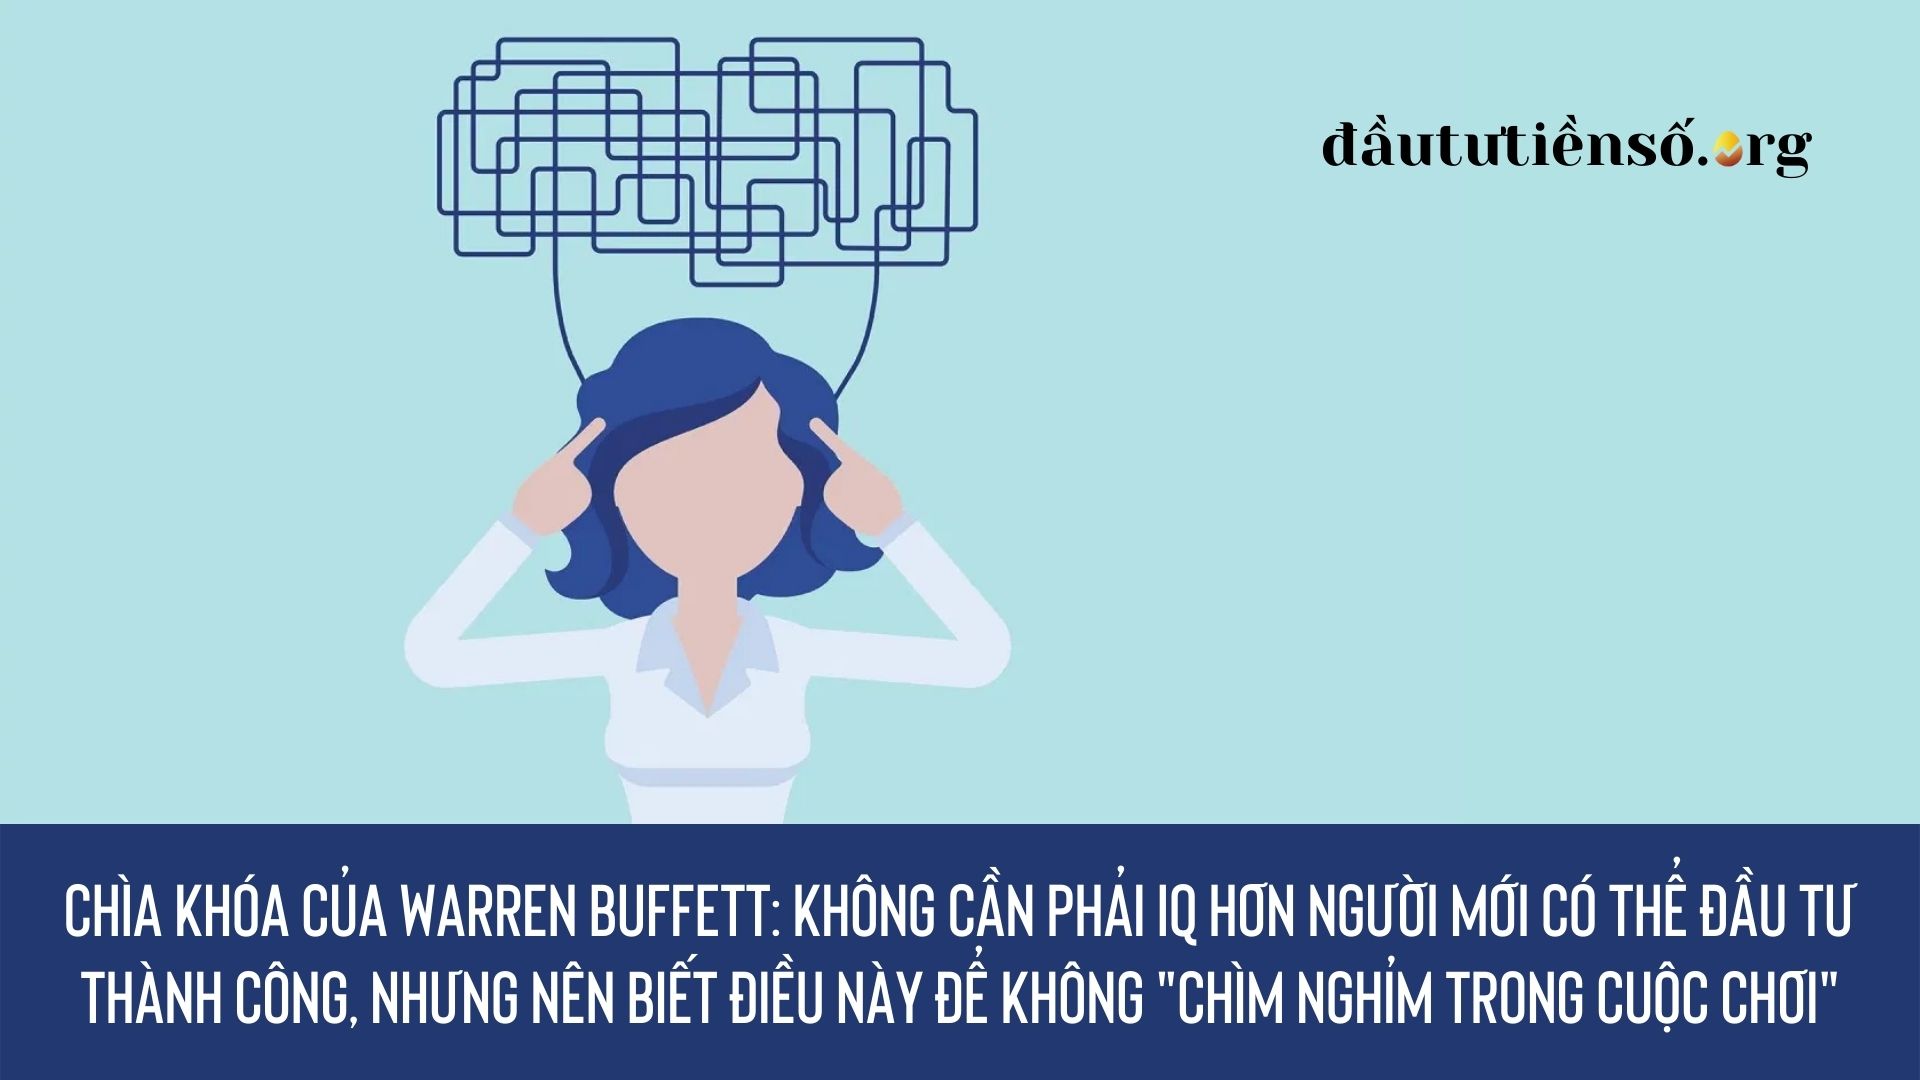 Chìa khóa của Warren Buffett: Không cần phải IQ hơn người mới có thể đầu tư thành công, nhưng nên biết điều này để không “chìm nghỉm trong cuộc chơi”